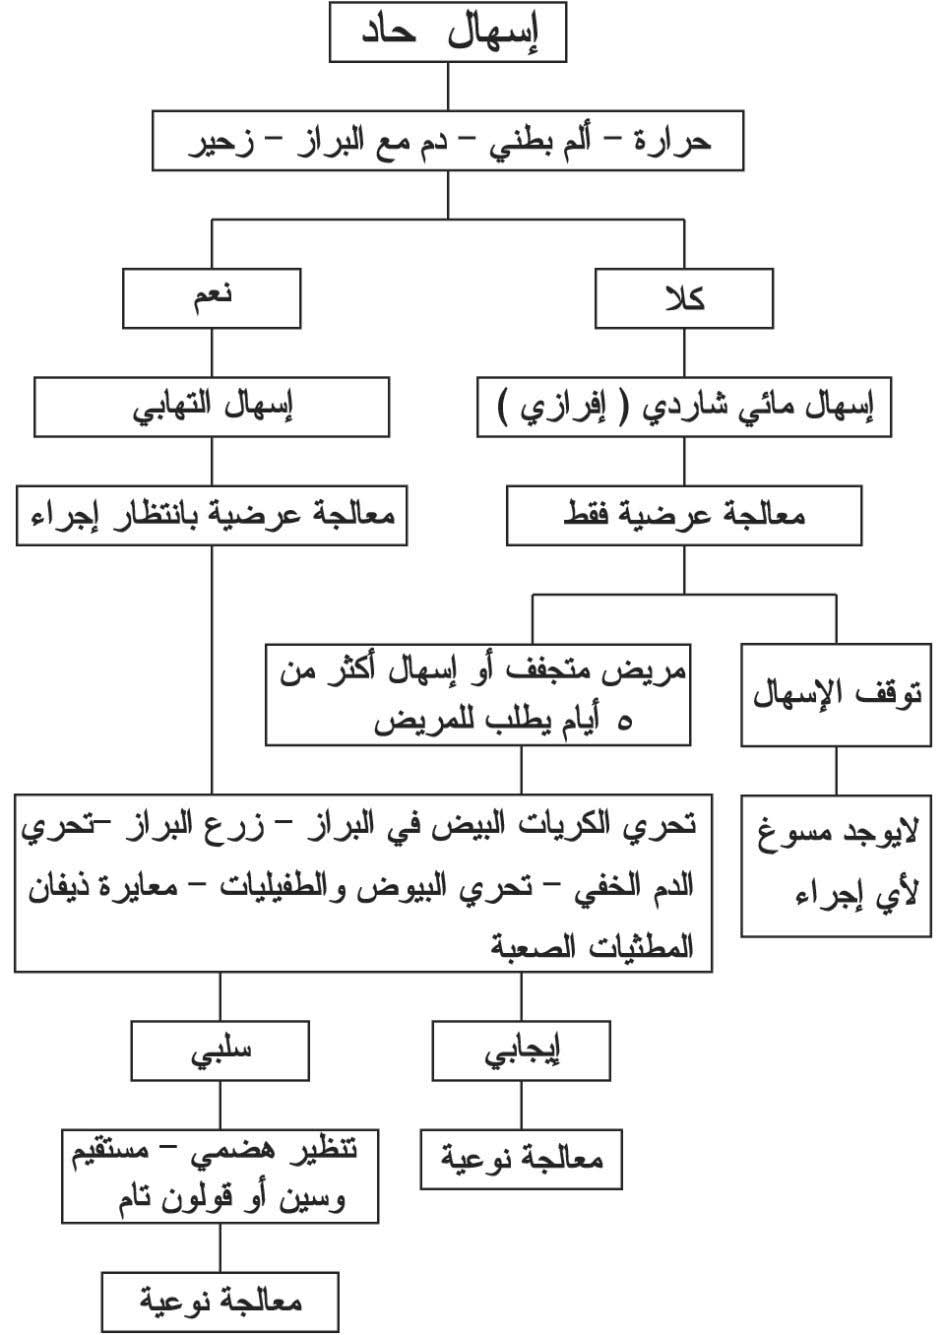 الموسوعة العربية | الإسهال الخمجي